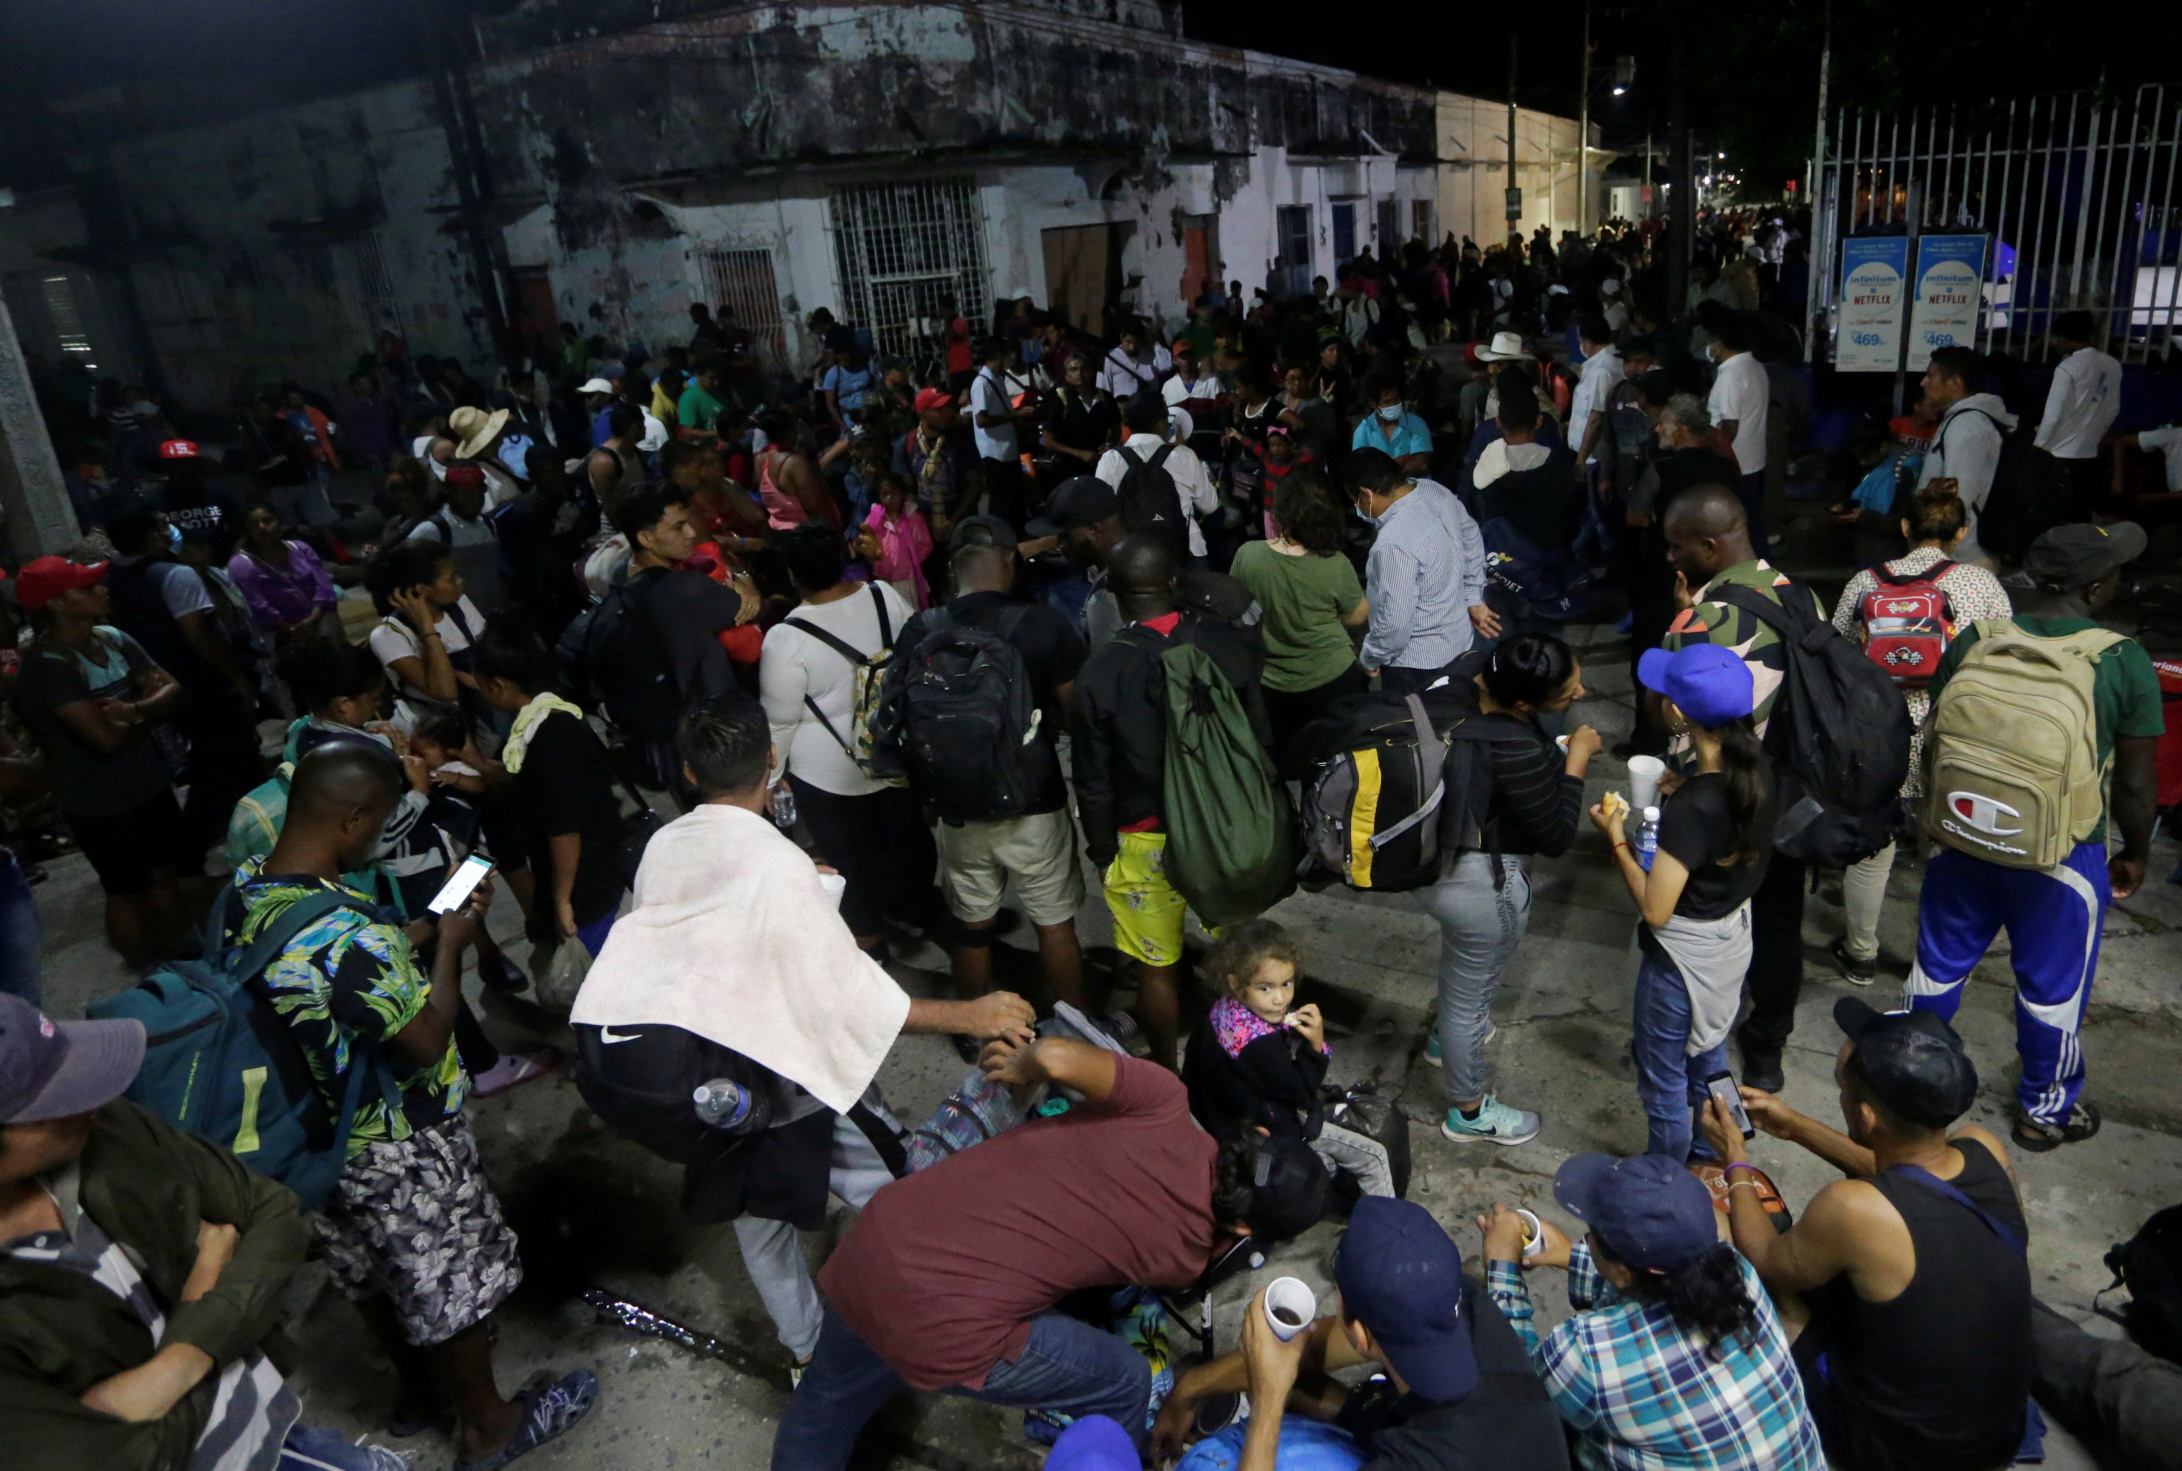 Migrants join a caravan heading to Mexico City, in Huixtla, Mexico October 27, 2021. REUTERS/Daniel Becerril